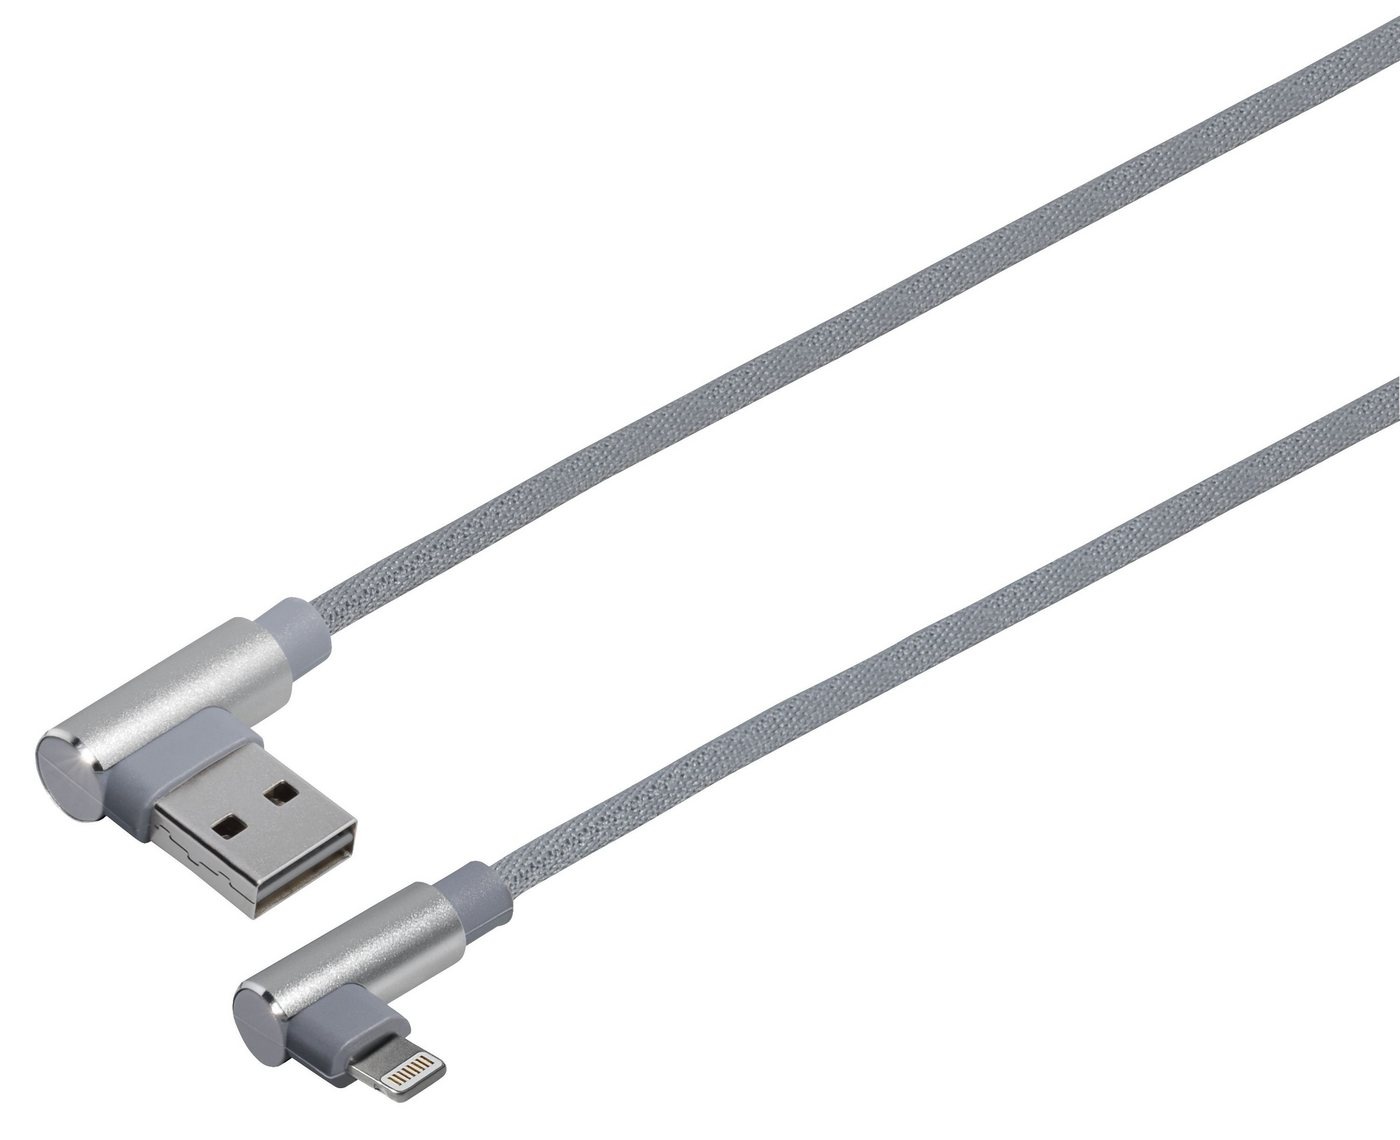 Maxtrack Smartphone-Kabel, USB, USB-A Winkelsstecker auf 8 pol. Winkelstecker (100 cm), Hochflexibles Verbindungskabelfür iPhone, iPad, iPod silberfarben